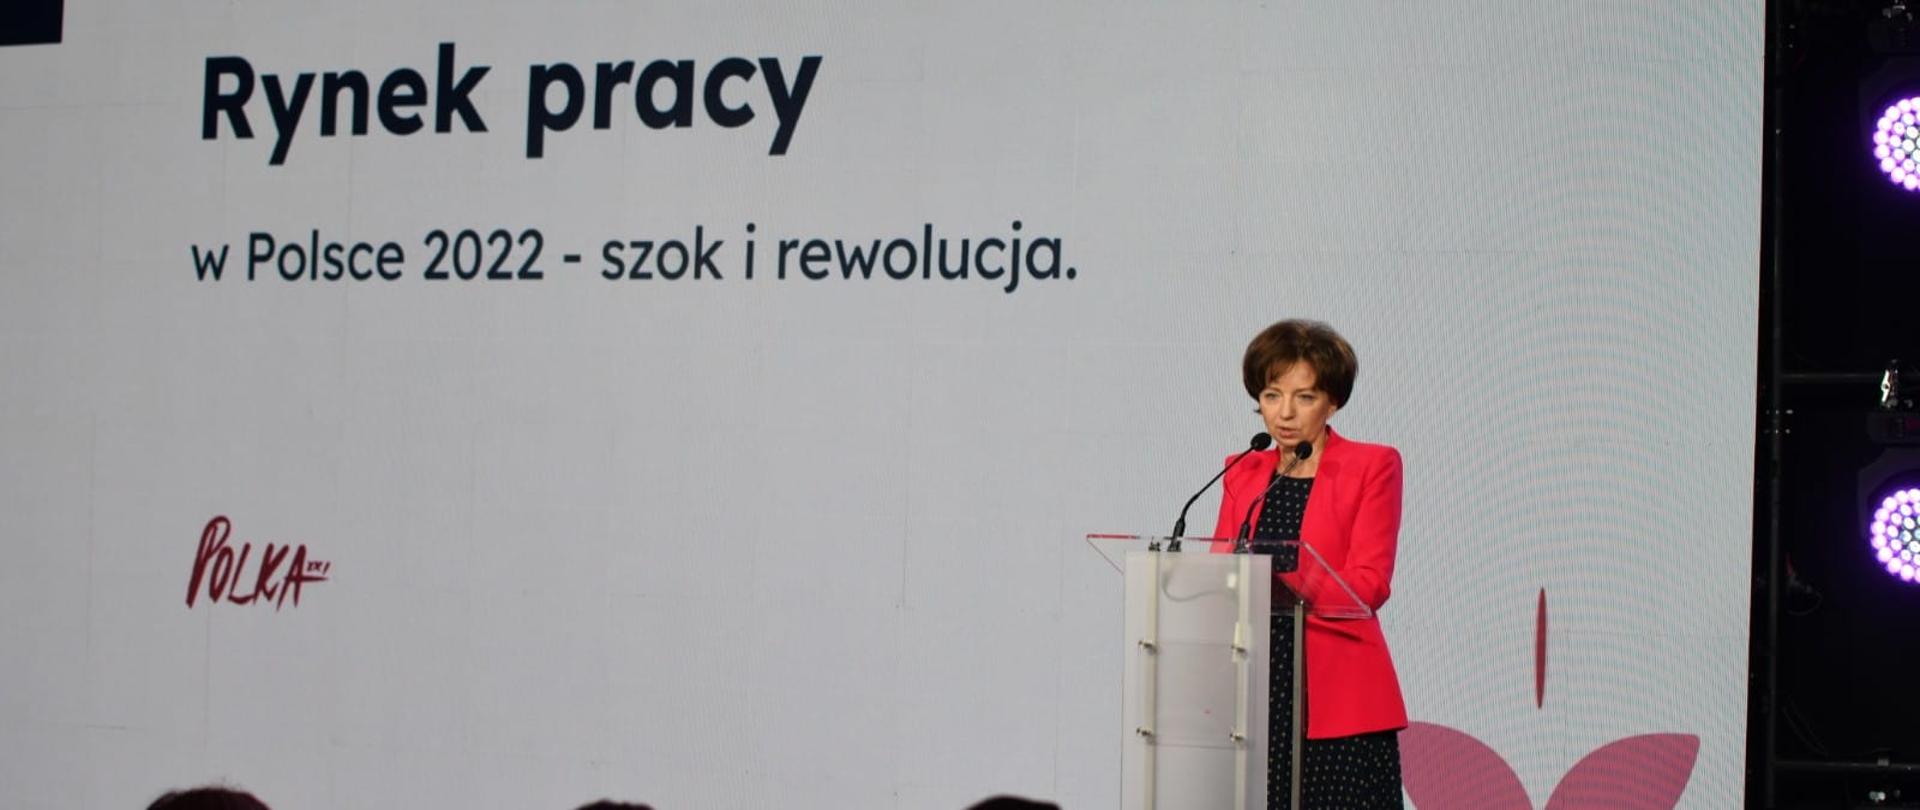 Na tle białego baneru z napisem Rynek pracy w Polsce 2022 - szok i rewolucja, przy mównicy stoi minister Maląg. Przed nią widać zarysy głów słuchaczy.